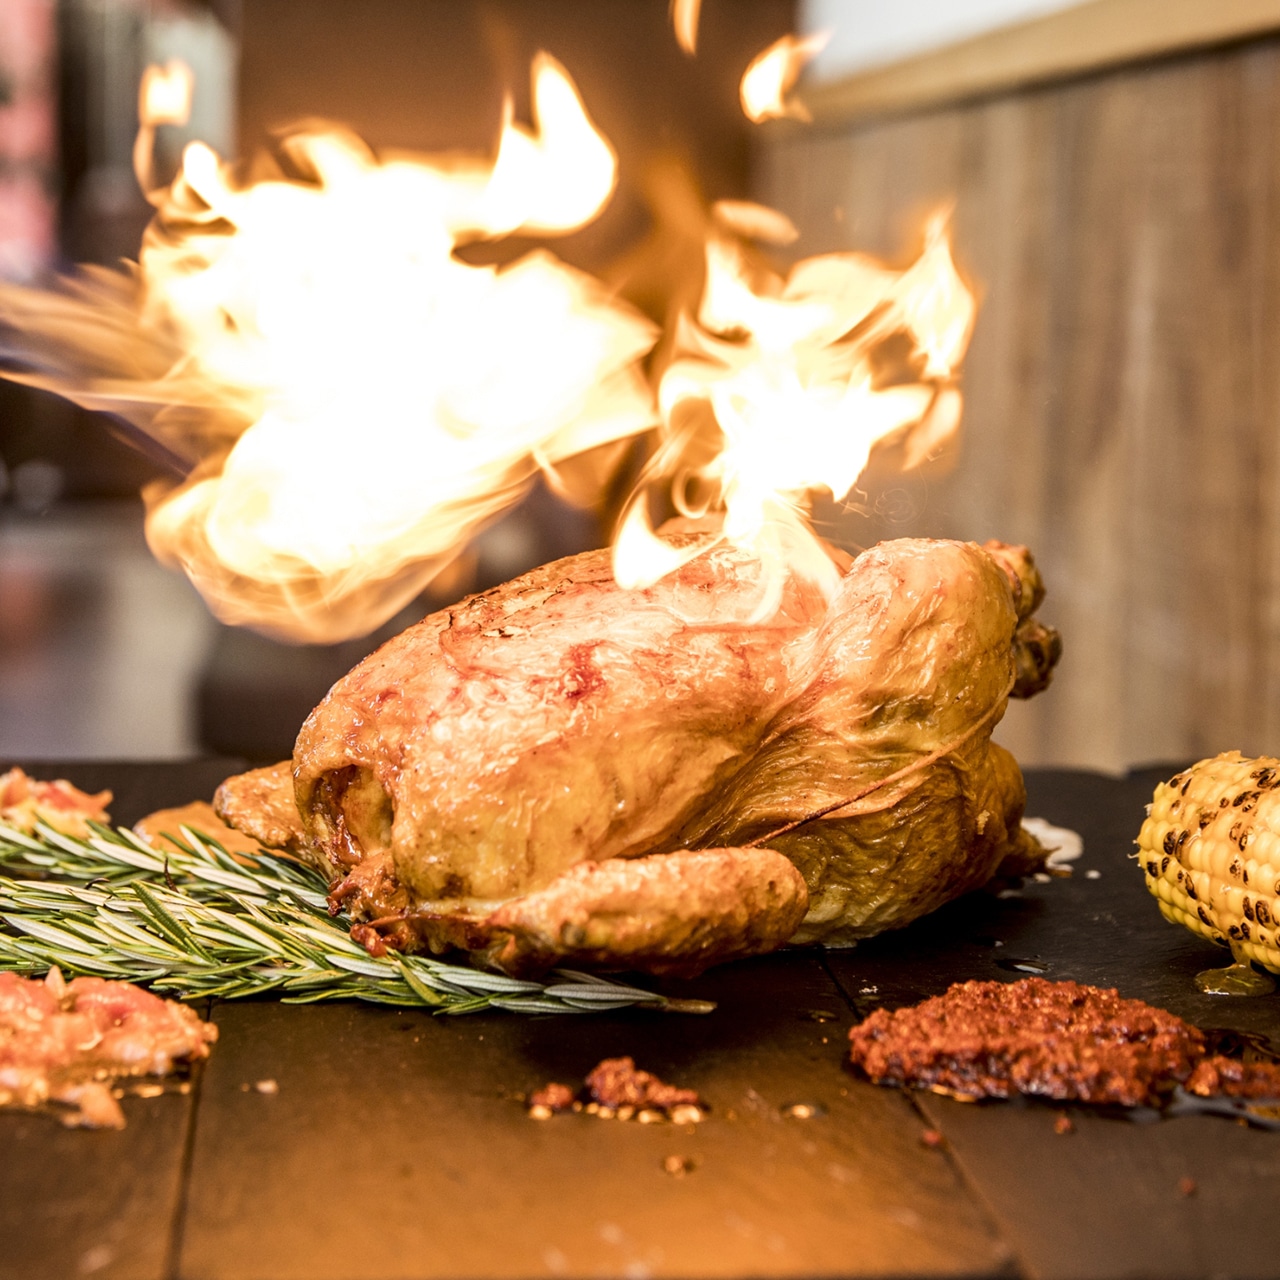 Spektakuläre Darstellung eines flambierten Hähnchens auf einem Holzbrett. Flammen umhüllen das goldbraun gebratene Hähnchen, das in der Mitte des Bildes platziert ist.